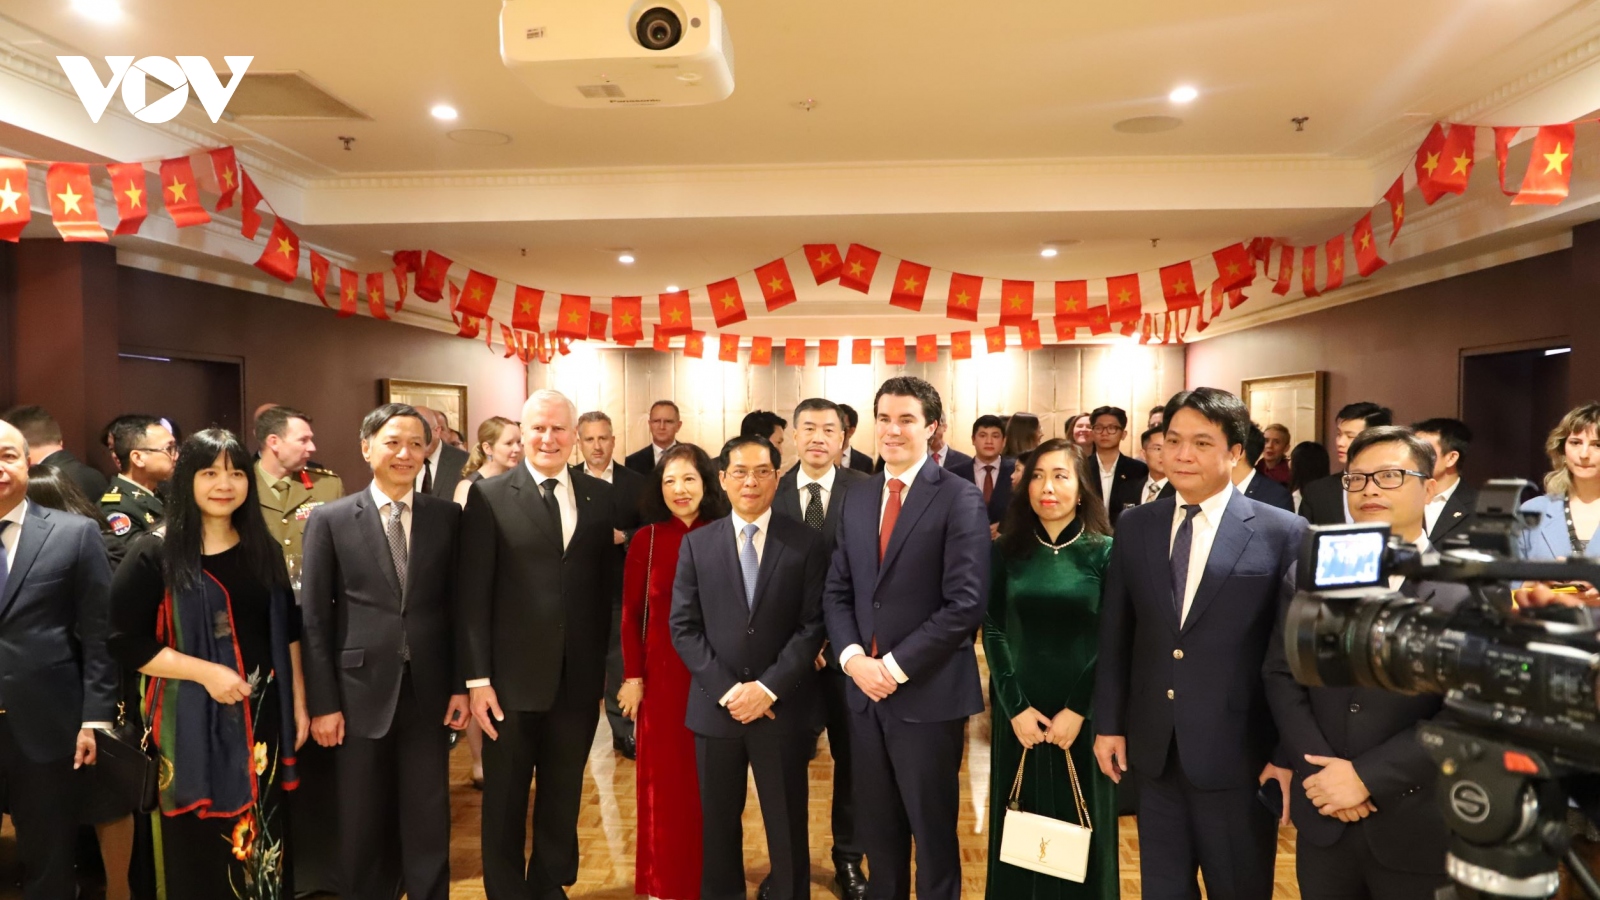 Bộ trưởng Ngoại giao: Việt Nam đánh giá cao những hỗ trợ quý báu của Australia